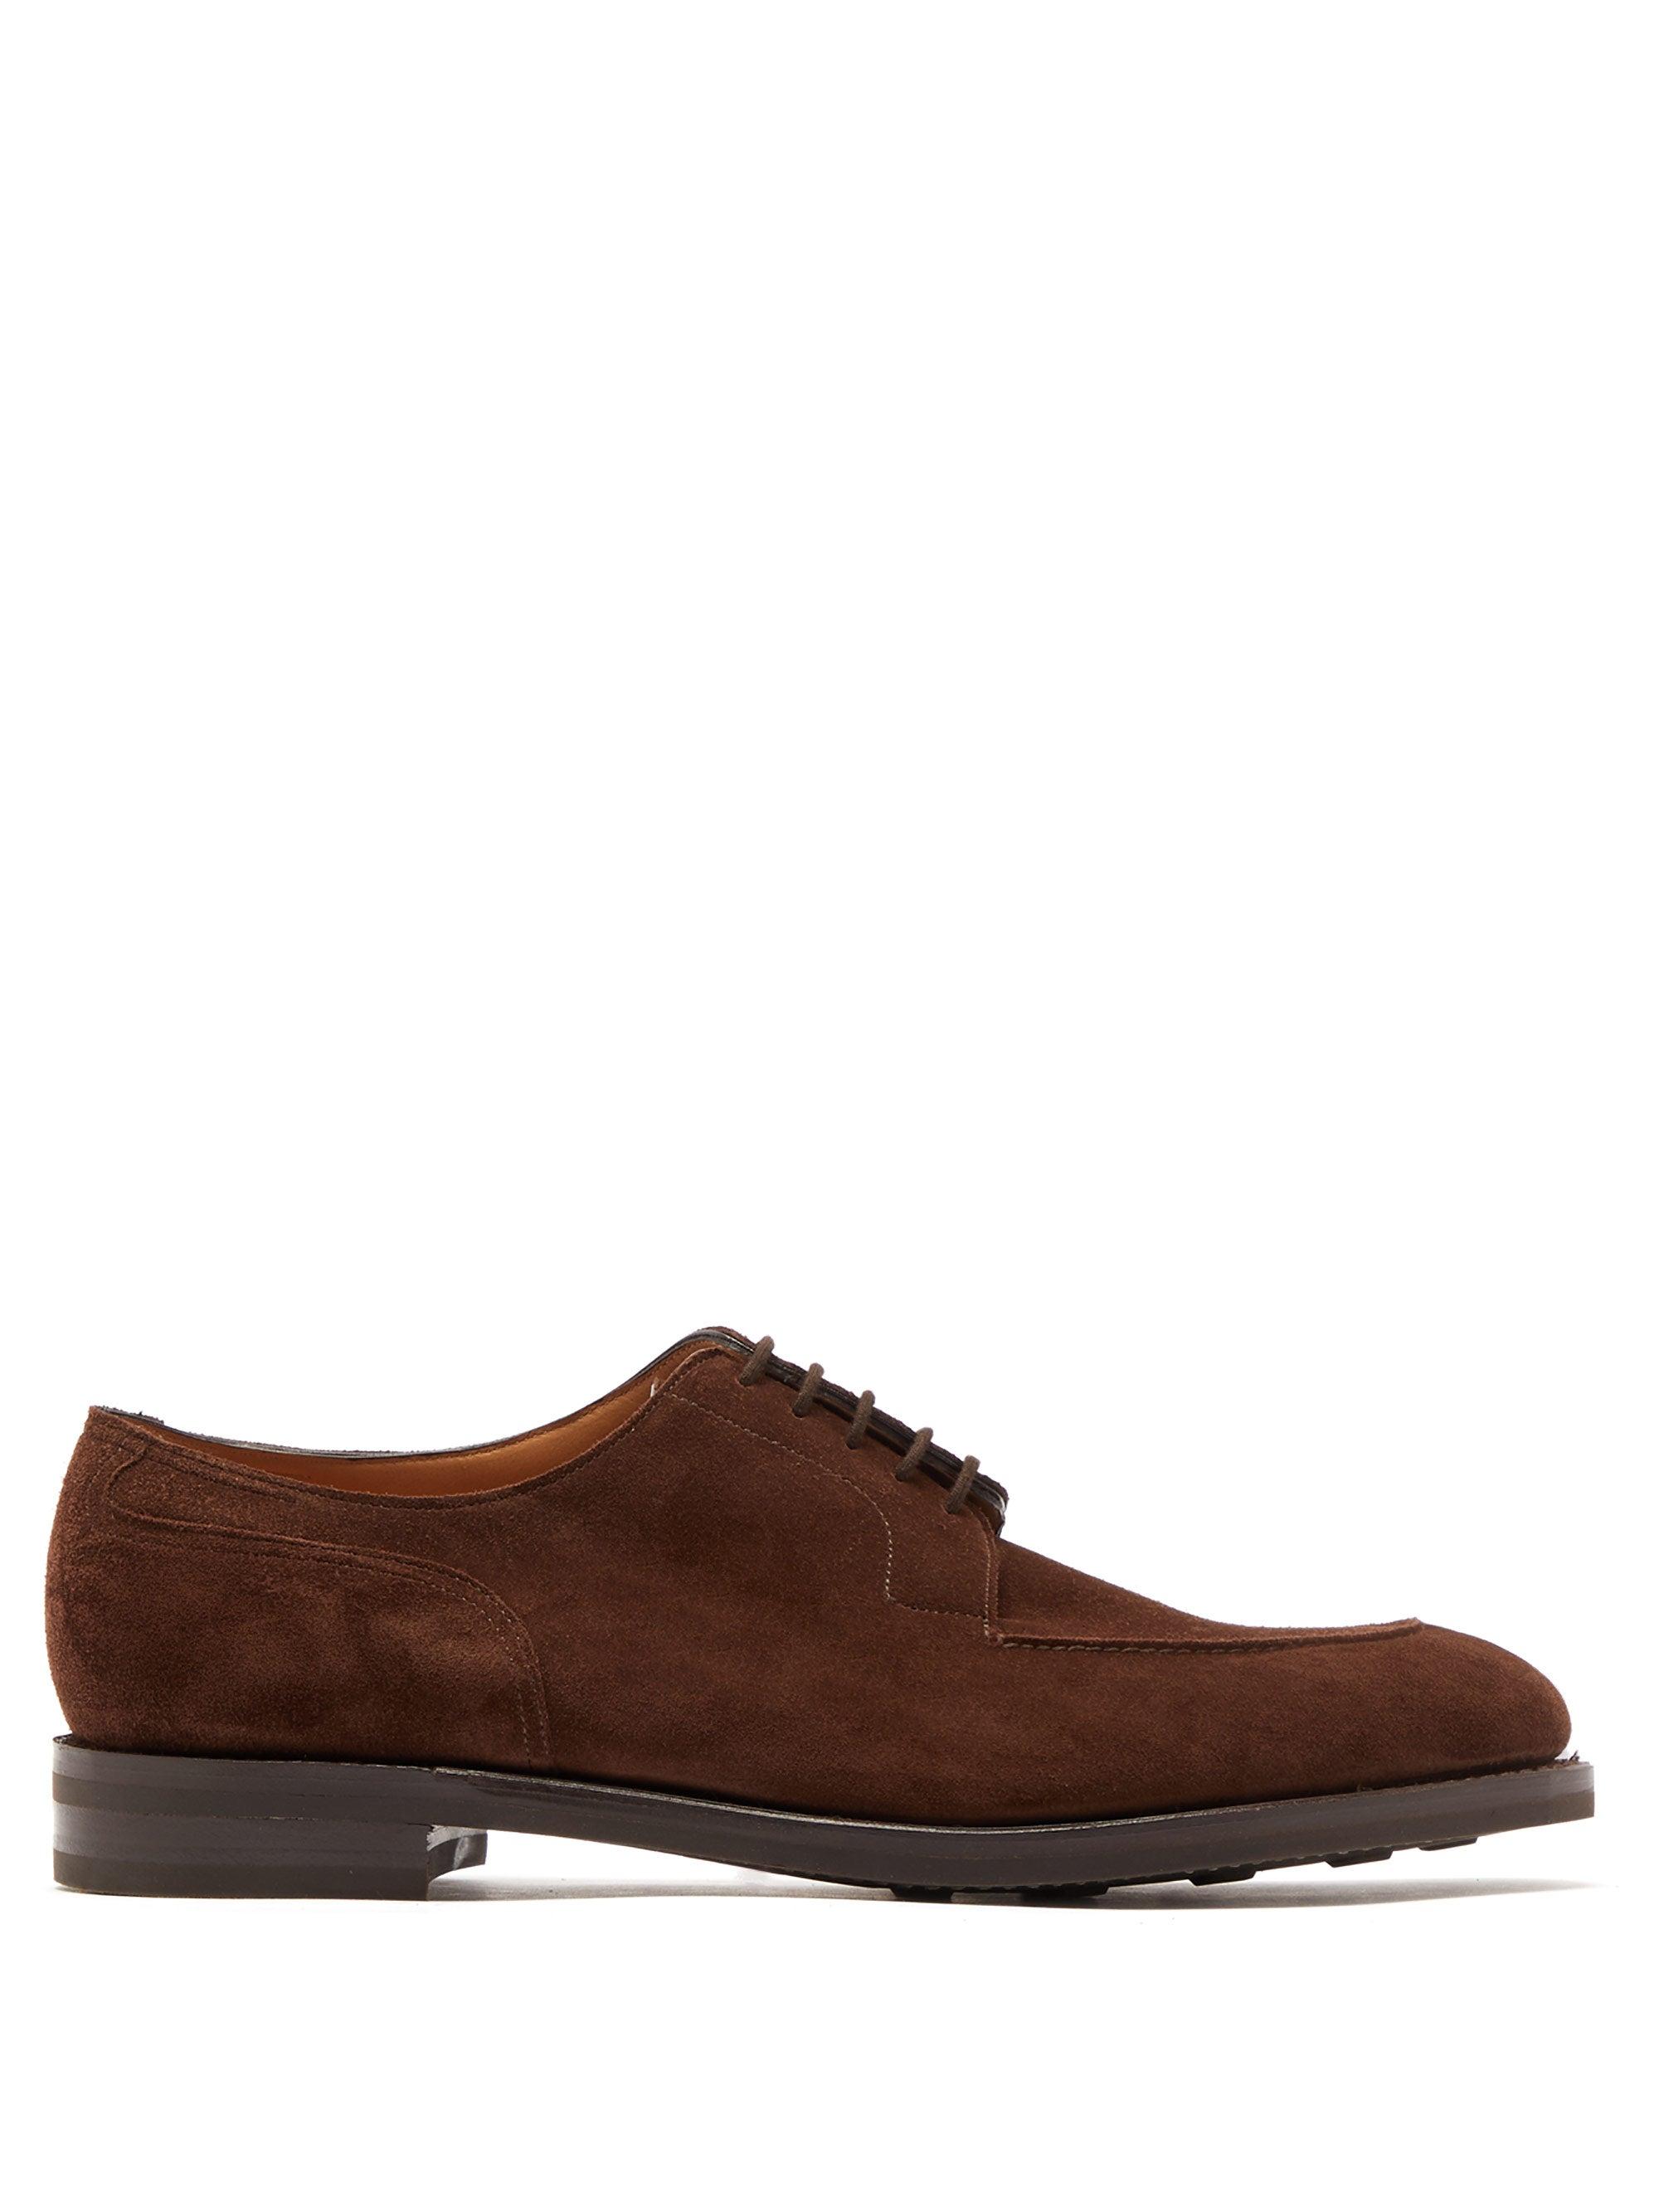 John Lobb Harlyn Suede Derby Shoes in Dark Brown (Brown) for Men - Lyst